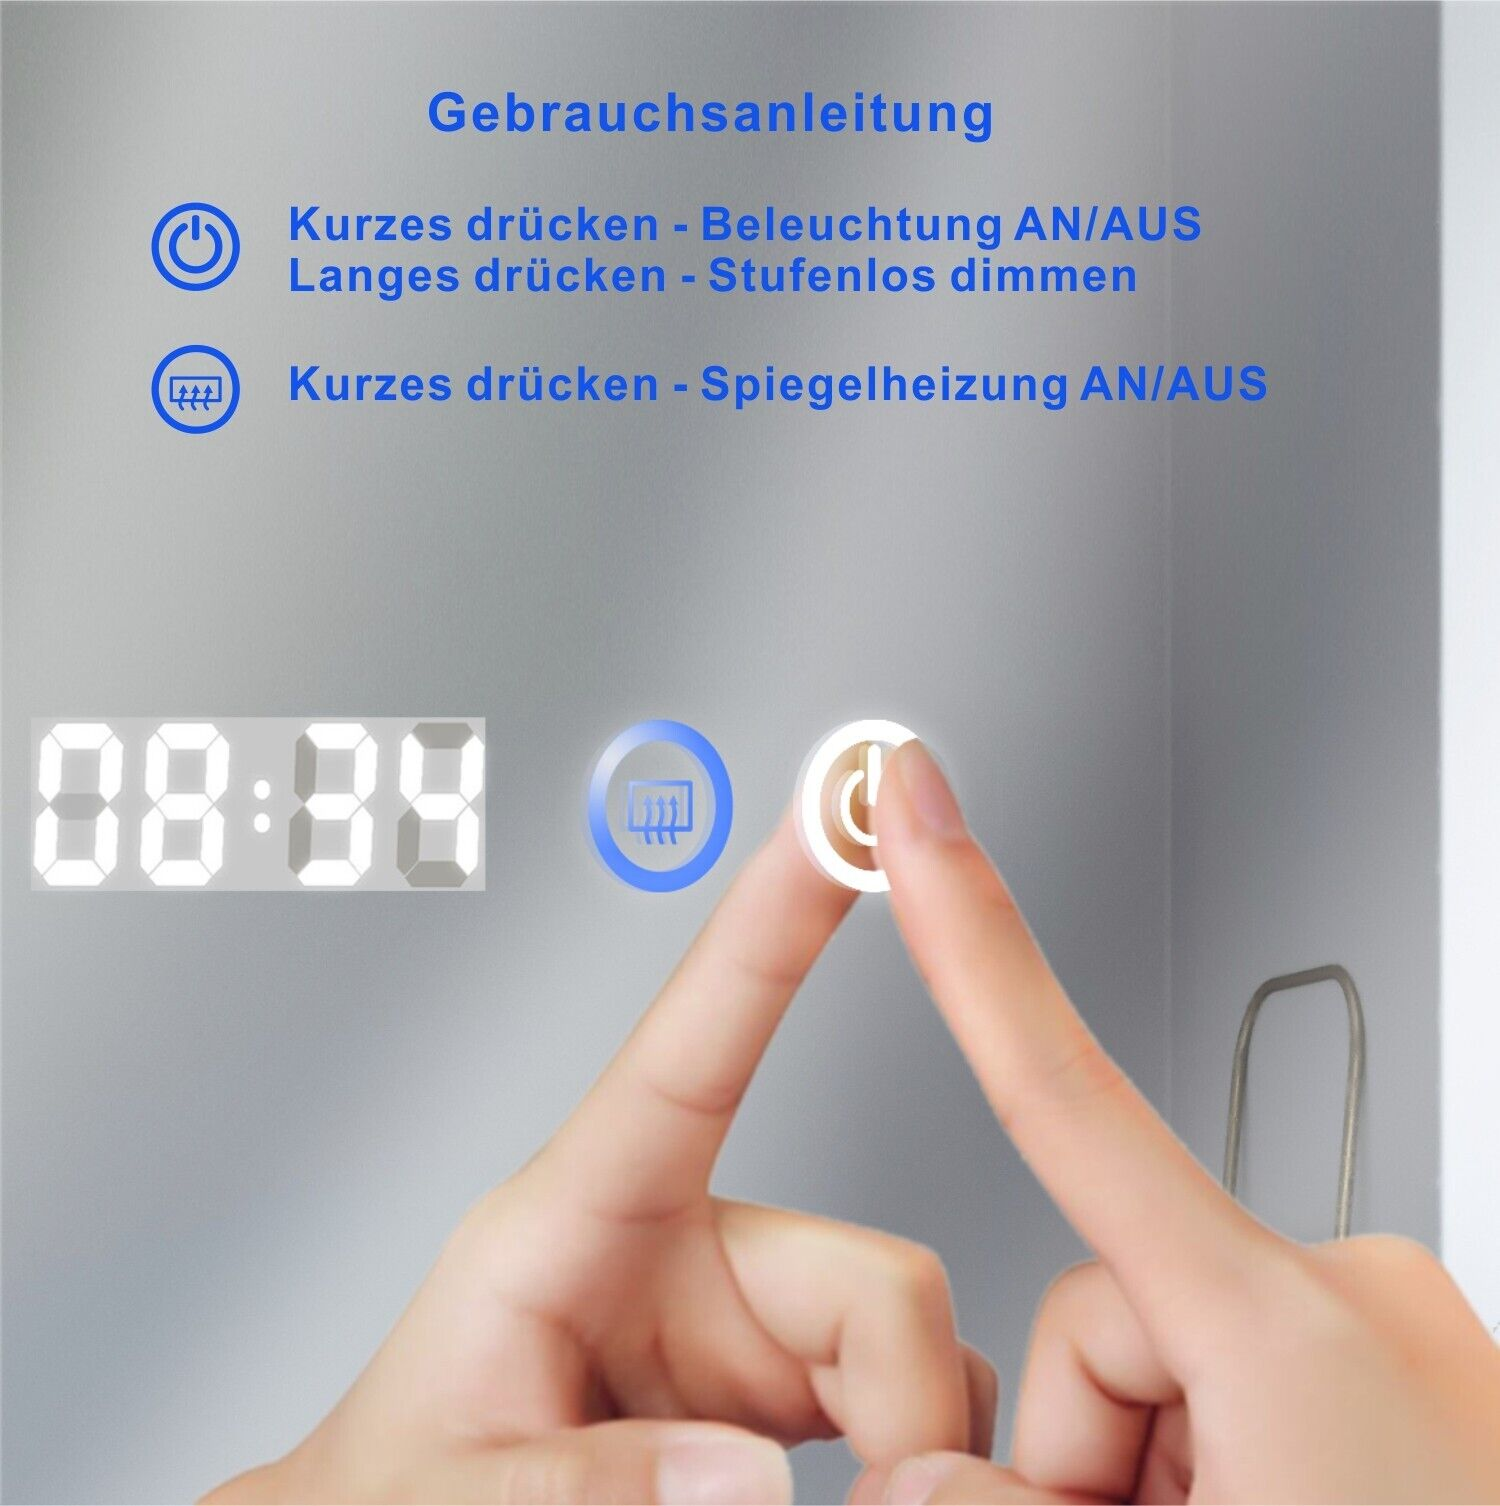 AQUABATOS LED mit Badspiegel Wandspiegel Rechteckig LED 6400K Kaltweiß Badspiegel Digitaluhr